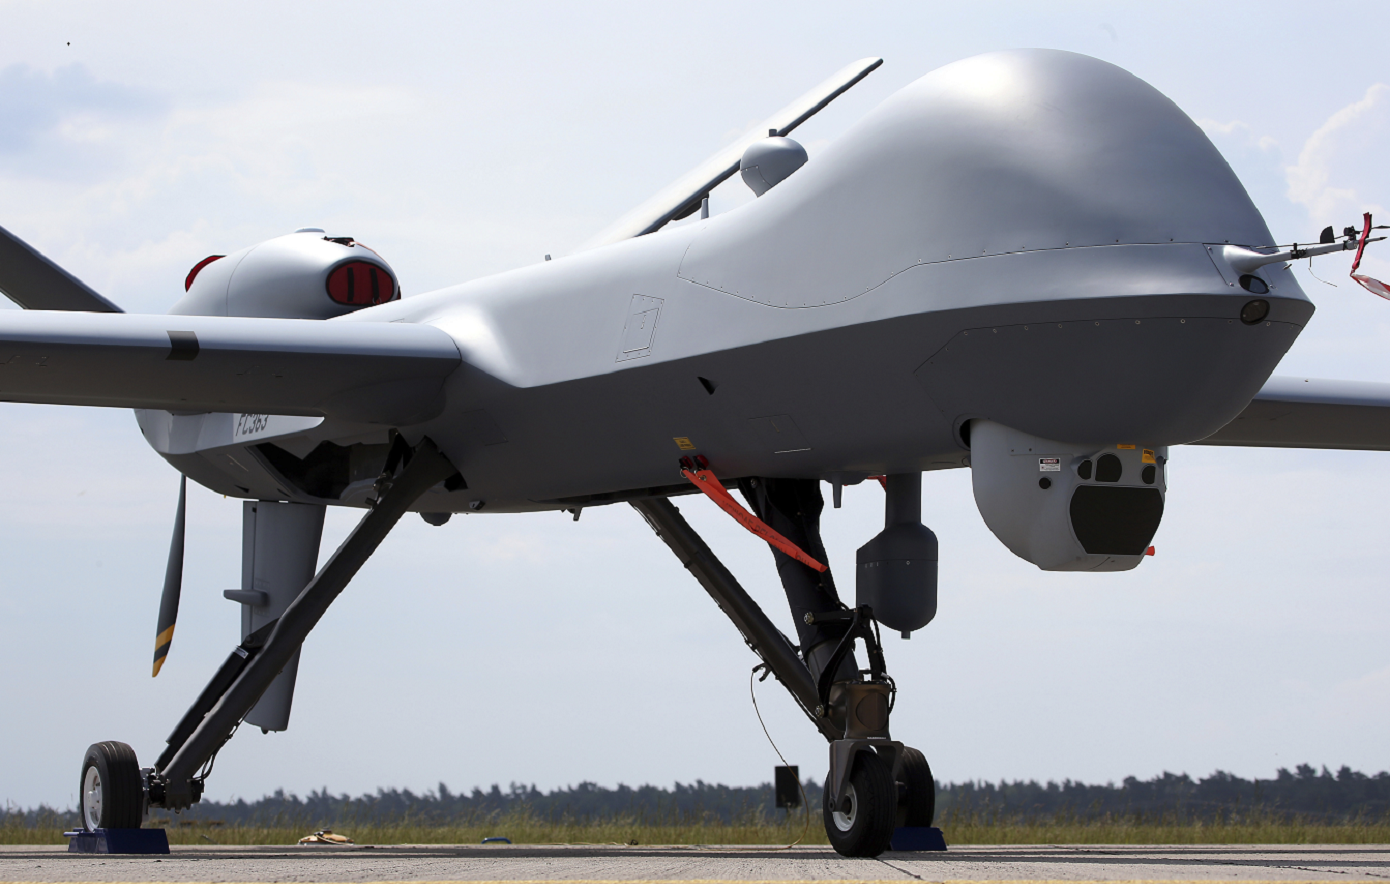 ΗΠΑ και Ταϊβάν θα κατασκευάσουν με τρισδιάστατη εκτύπωση στρατό drones για να αντιμετωπίσουν την Κίνα